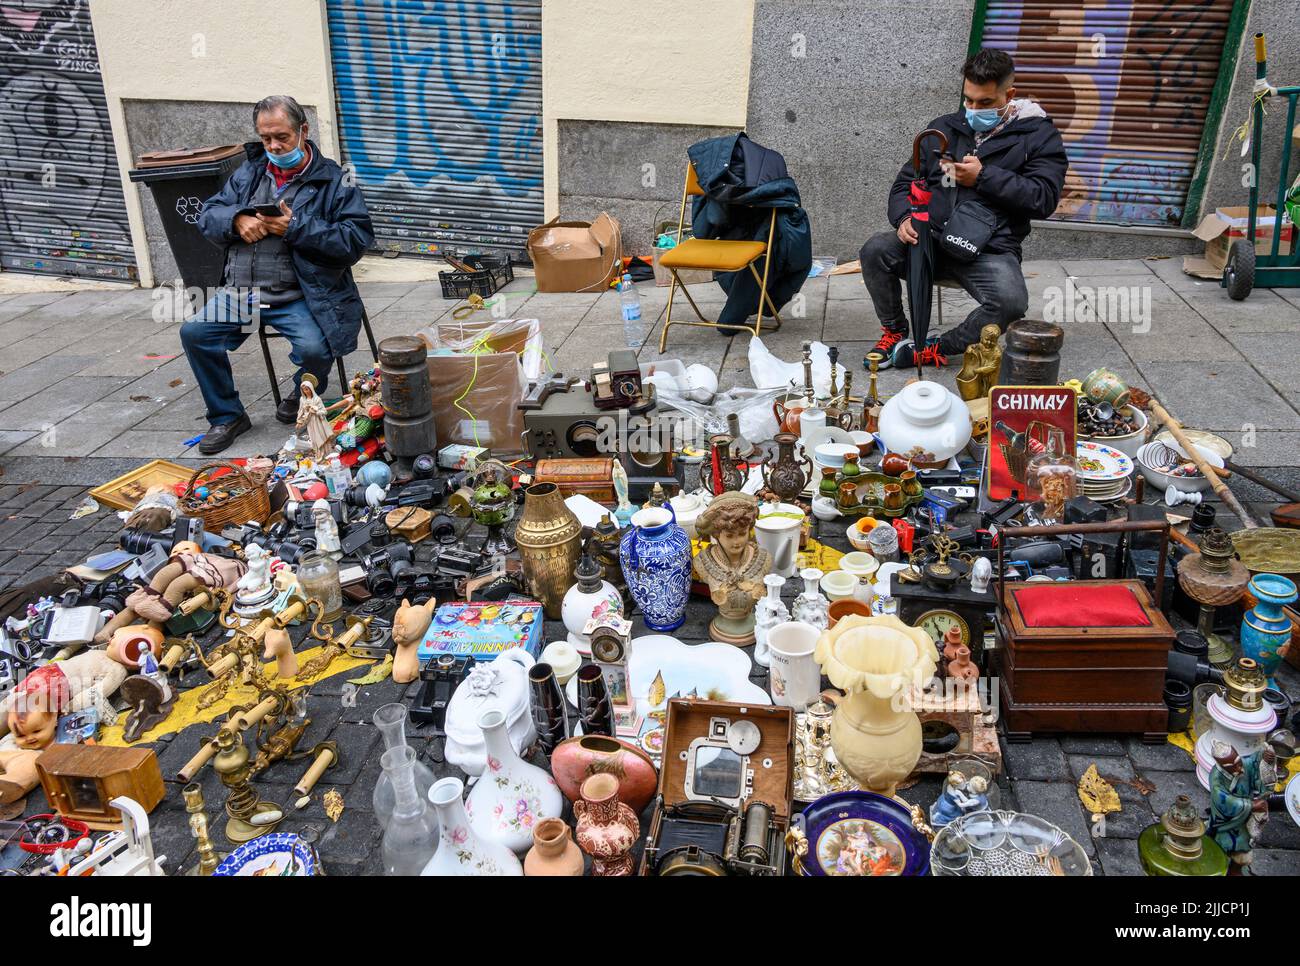 Antigüedades y bric-a-brac a la venta en el mercado de pulgas Rastro alrededor de la Plaza de Cascorro entre la Latina y Embajadores, Madrid, España. Foto de stock